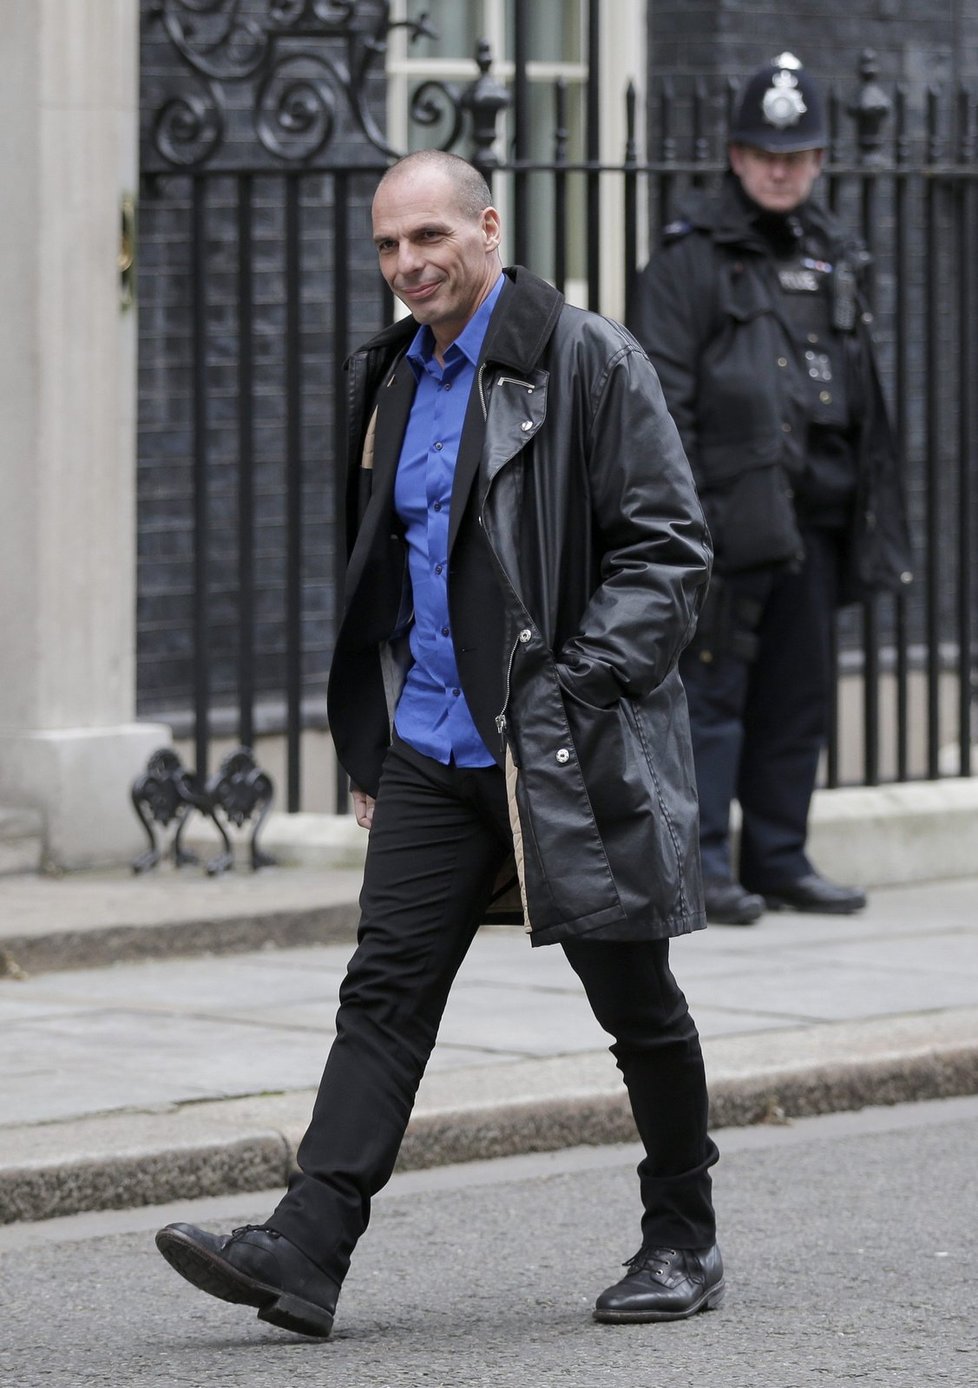 Řecký ministr financí Varufakis v koženém kabátu před jednáním s britským protějškem Osbornem